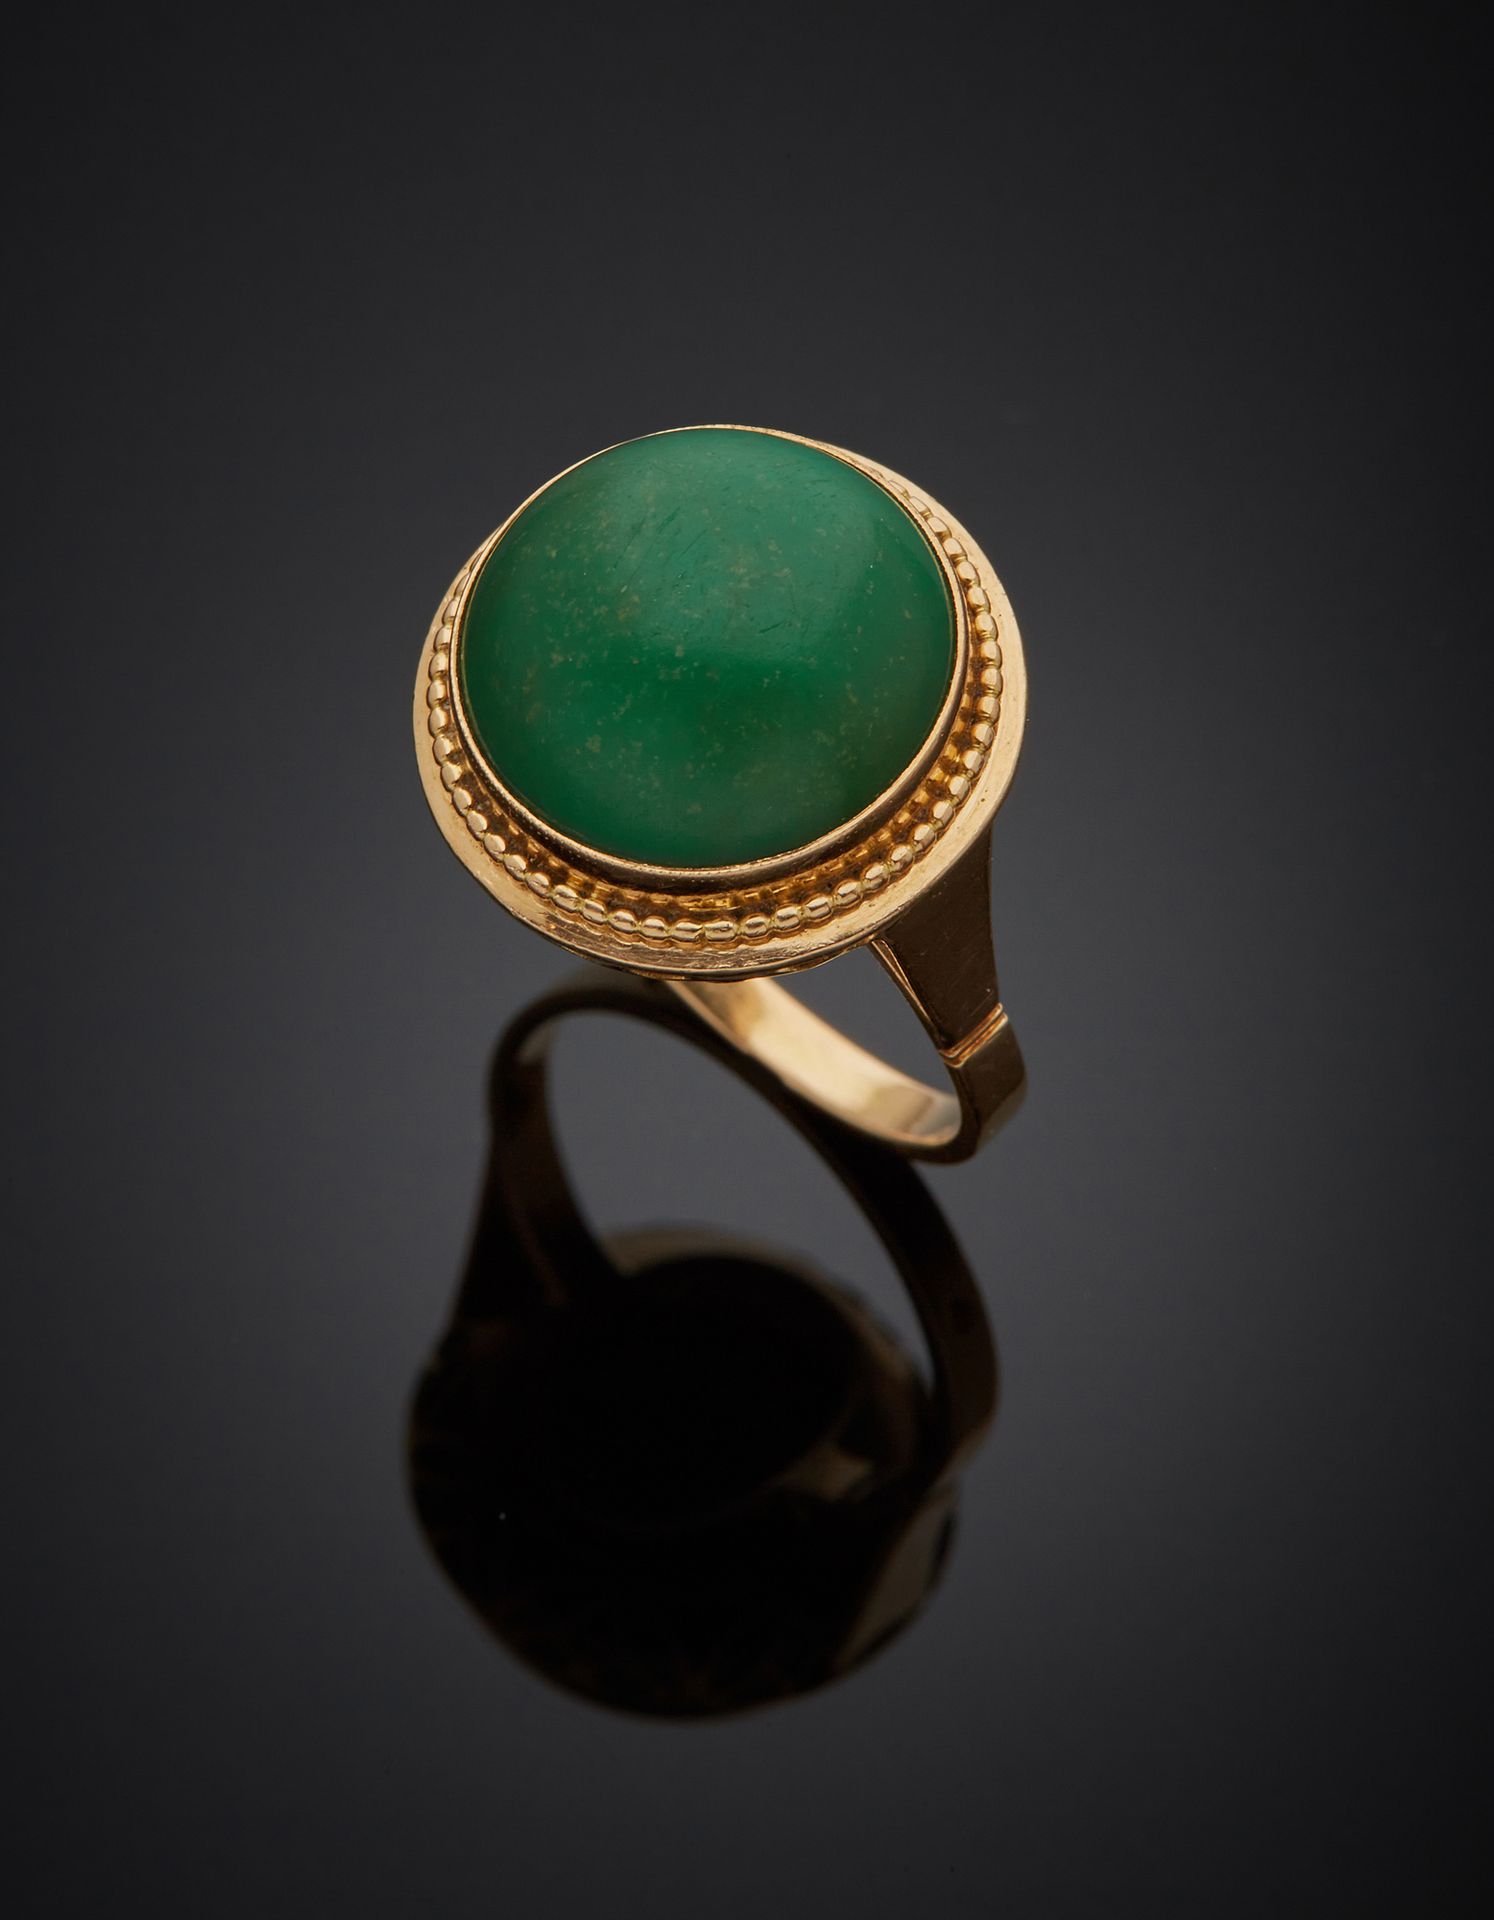 Null 一枚18K黄金750‰的圆形戒指，镶嵌着凸面绿宝石（可能是经过处理的绿松石）。

使用的痕迹。

手指尺寸53 毛重6.10克